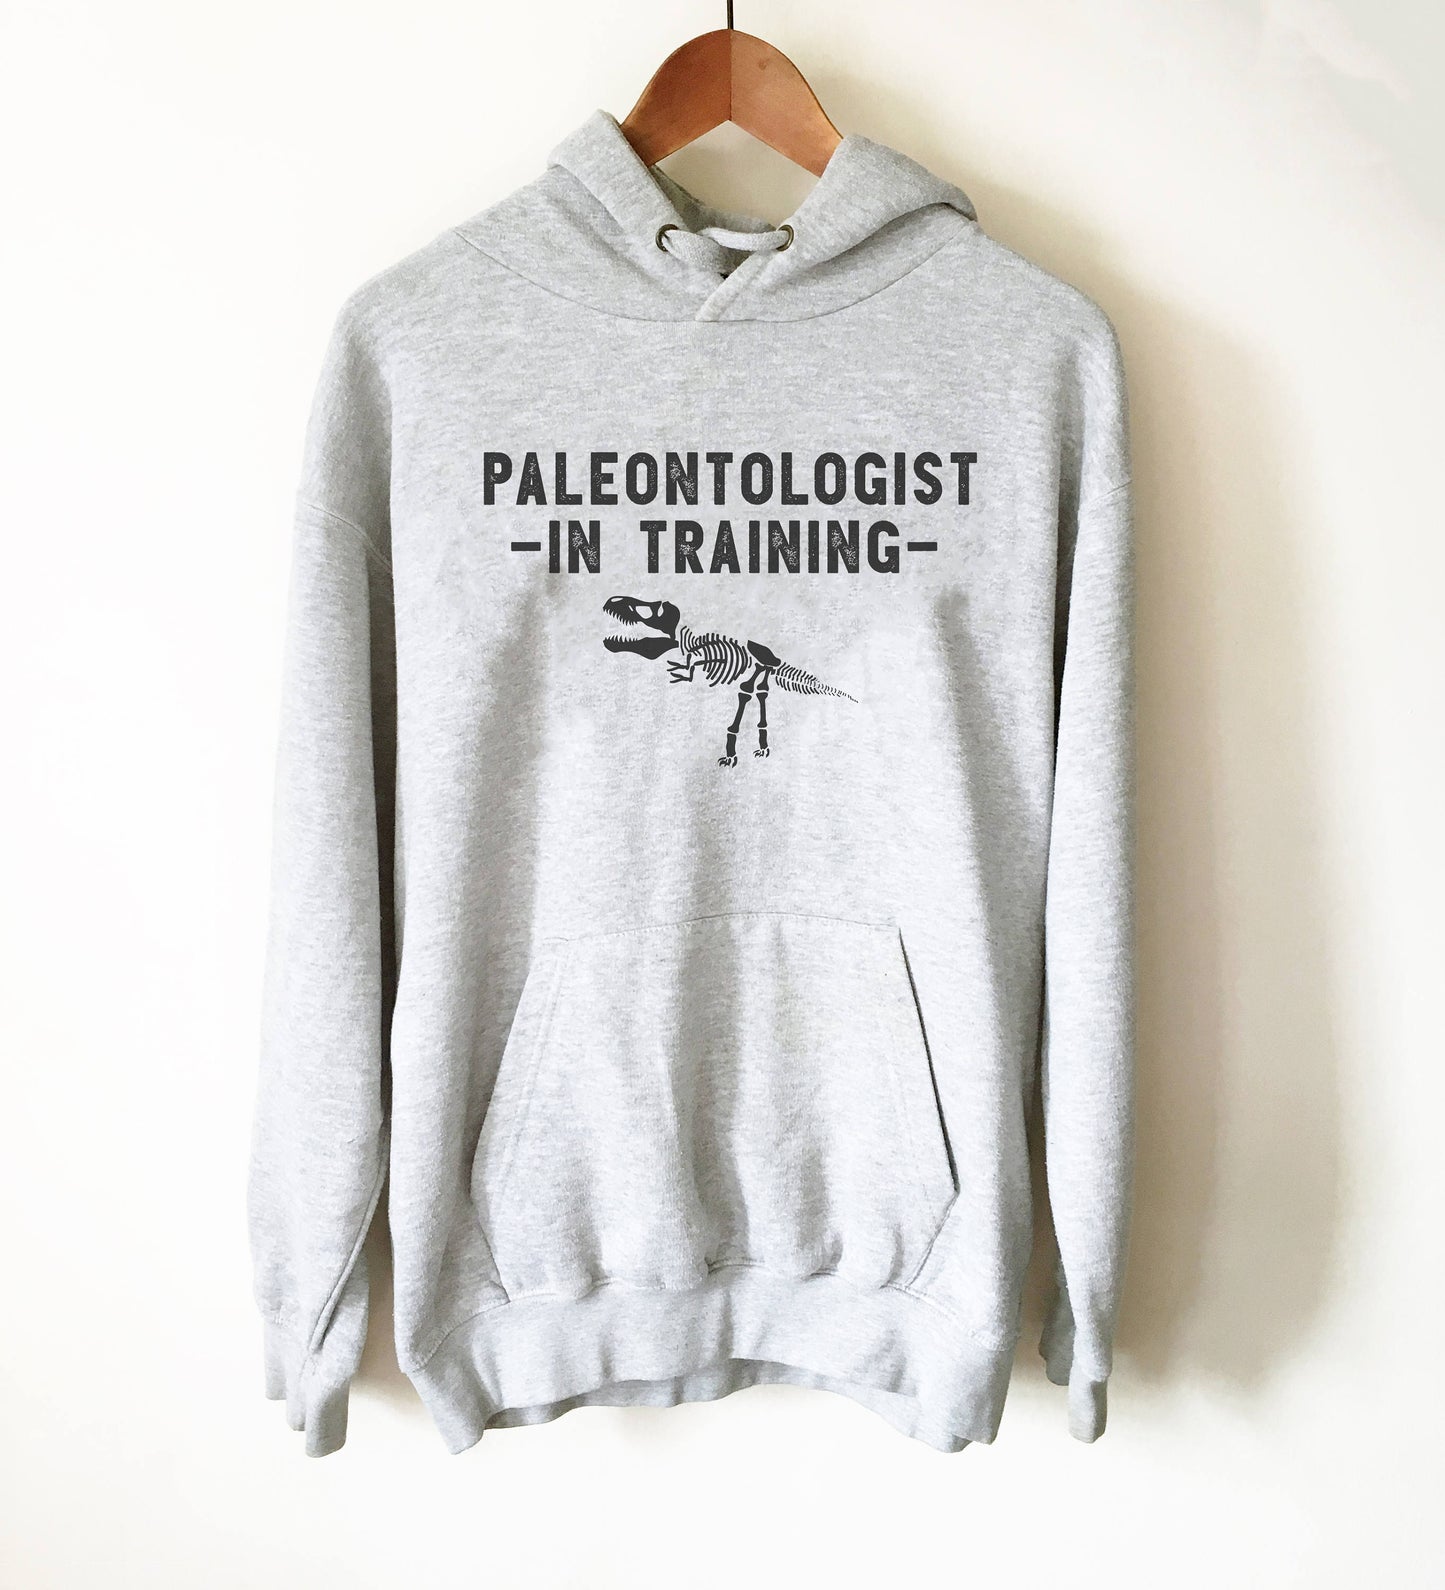 Paleontologist In Training Hoodie - Paleontology Shirt, Dinosaur Shirt, Dinosaurus Shirt, Geology Shirt, Palaeontology Gift